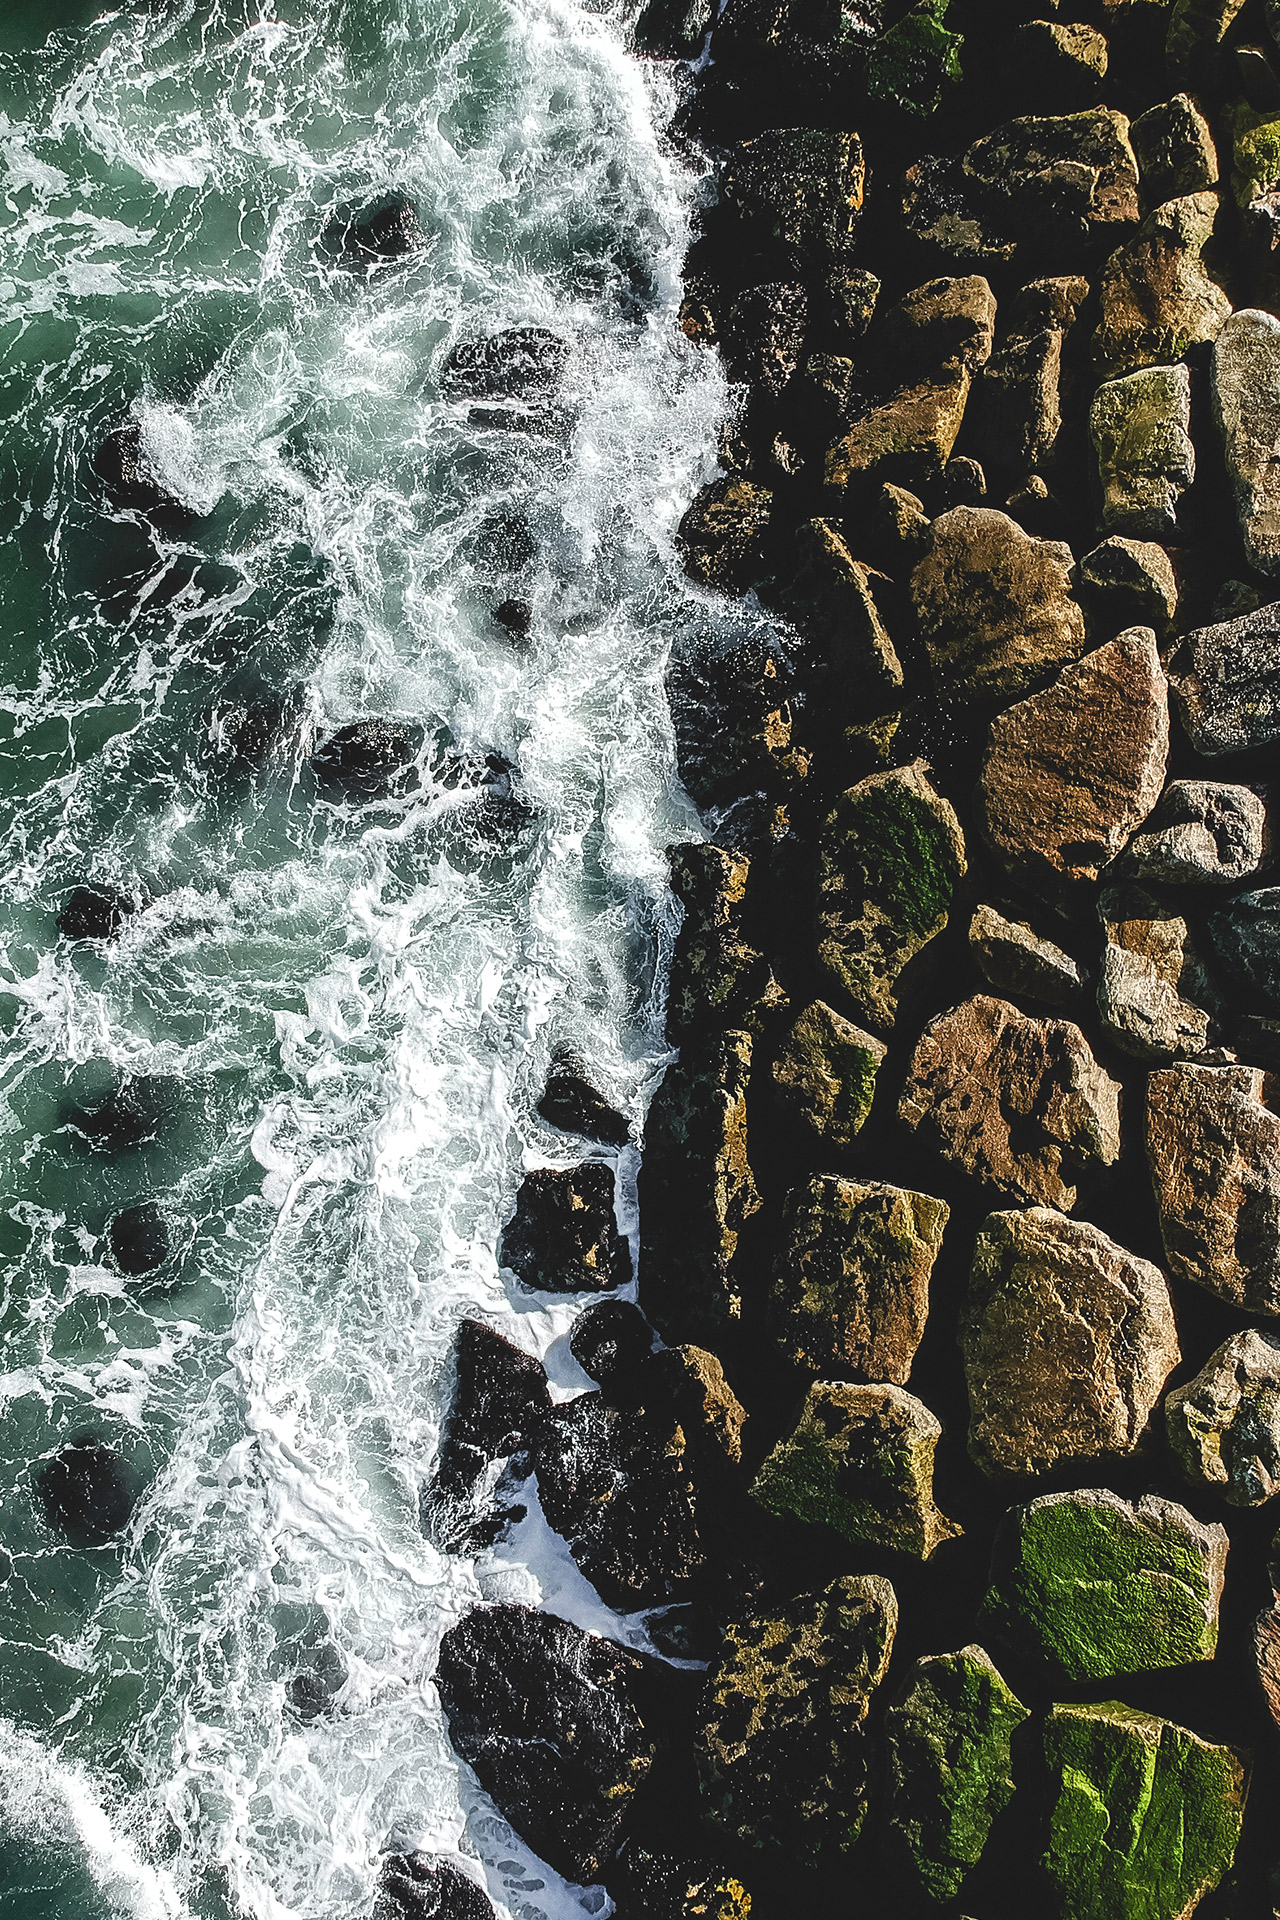 Vista dall'alto delle onde che si infrangono contro un muro di roccia costruito - simbolo dell'investimento di qualità.